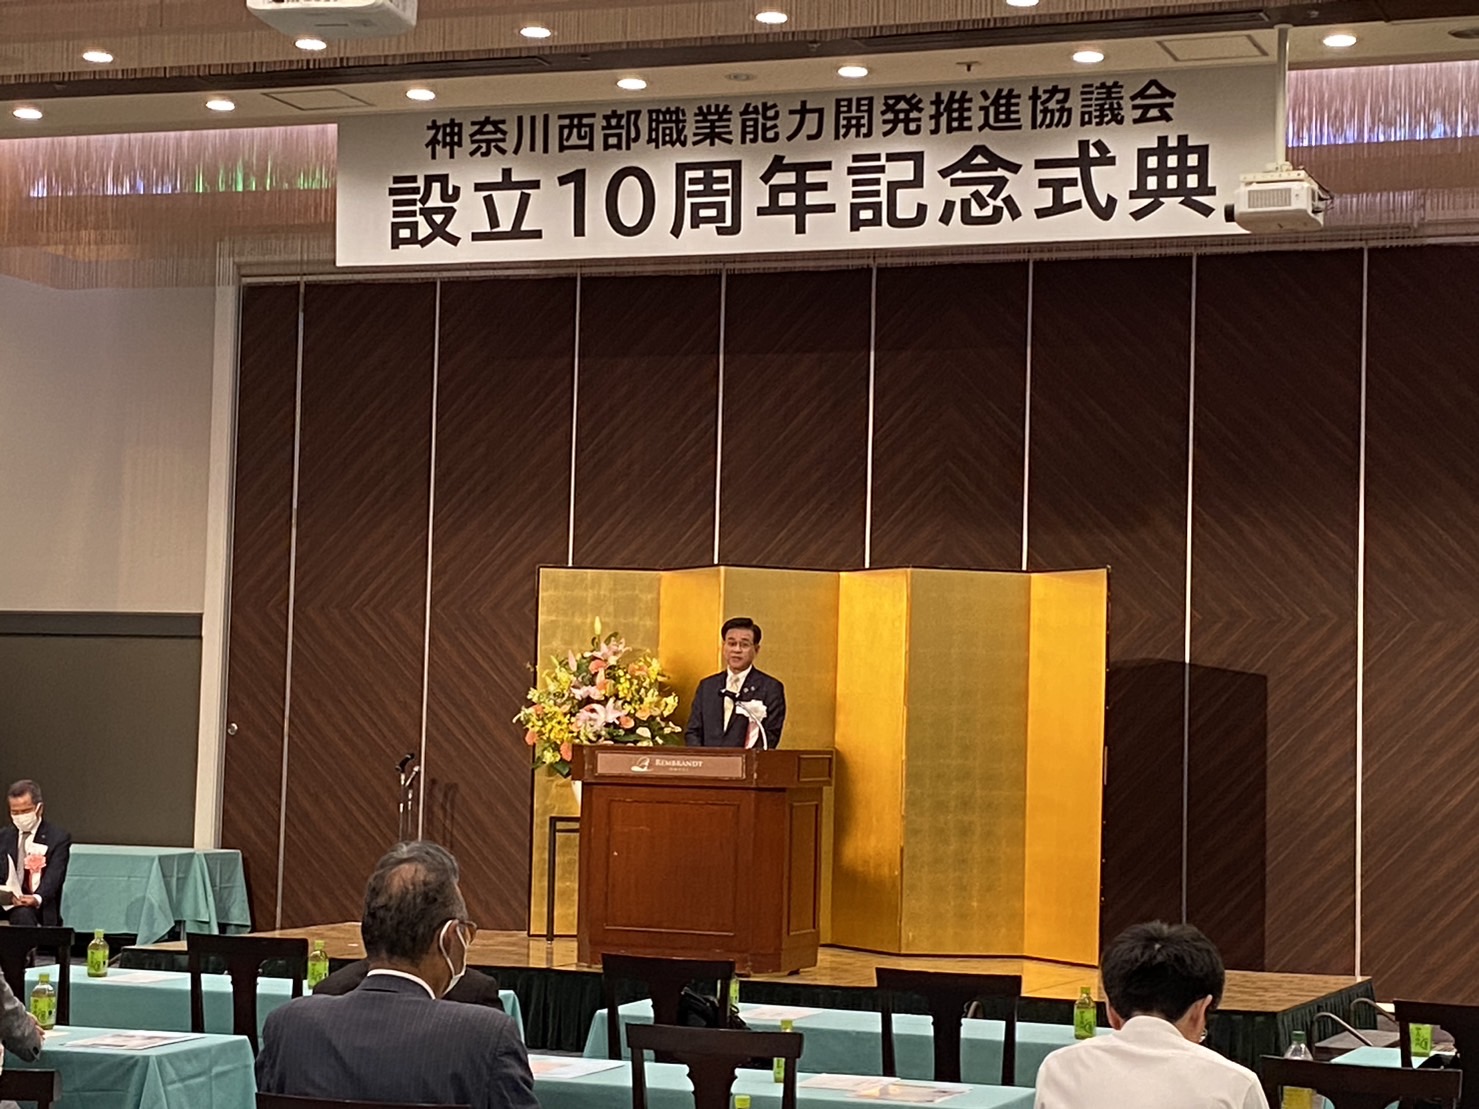 神奈川西部職業能力開発推進協議会設立10周年記念式典・祝賀会